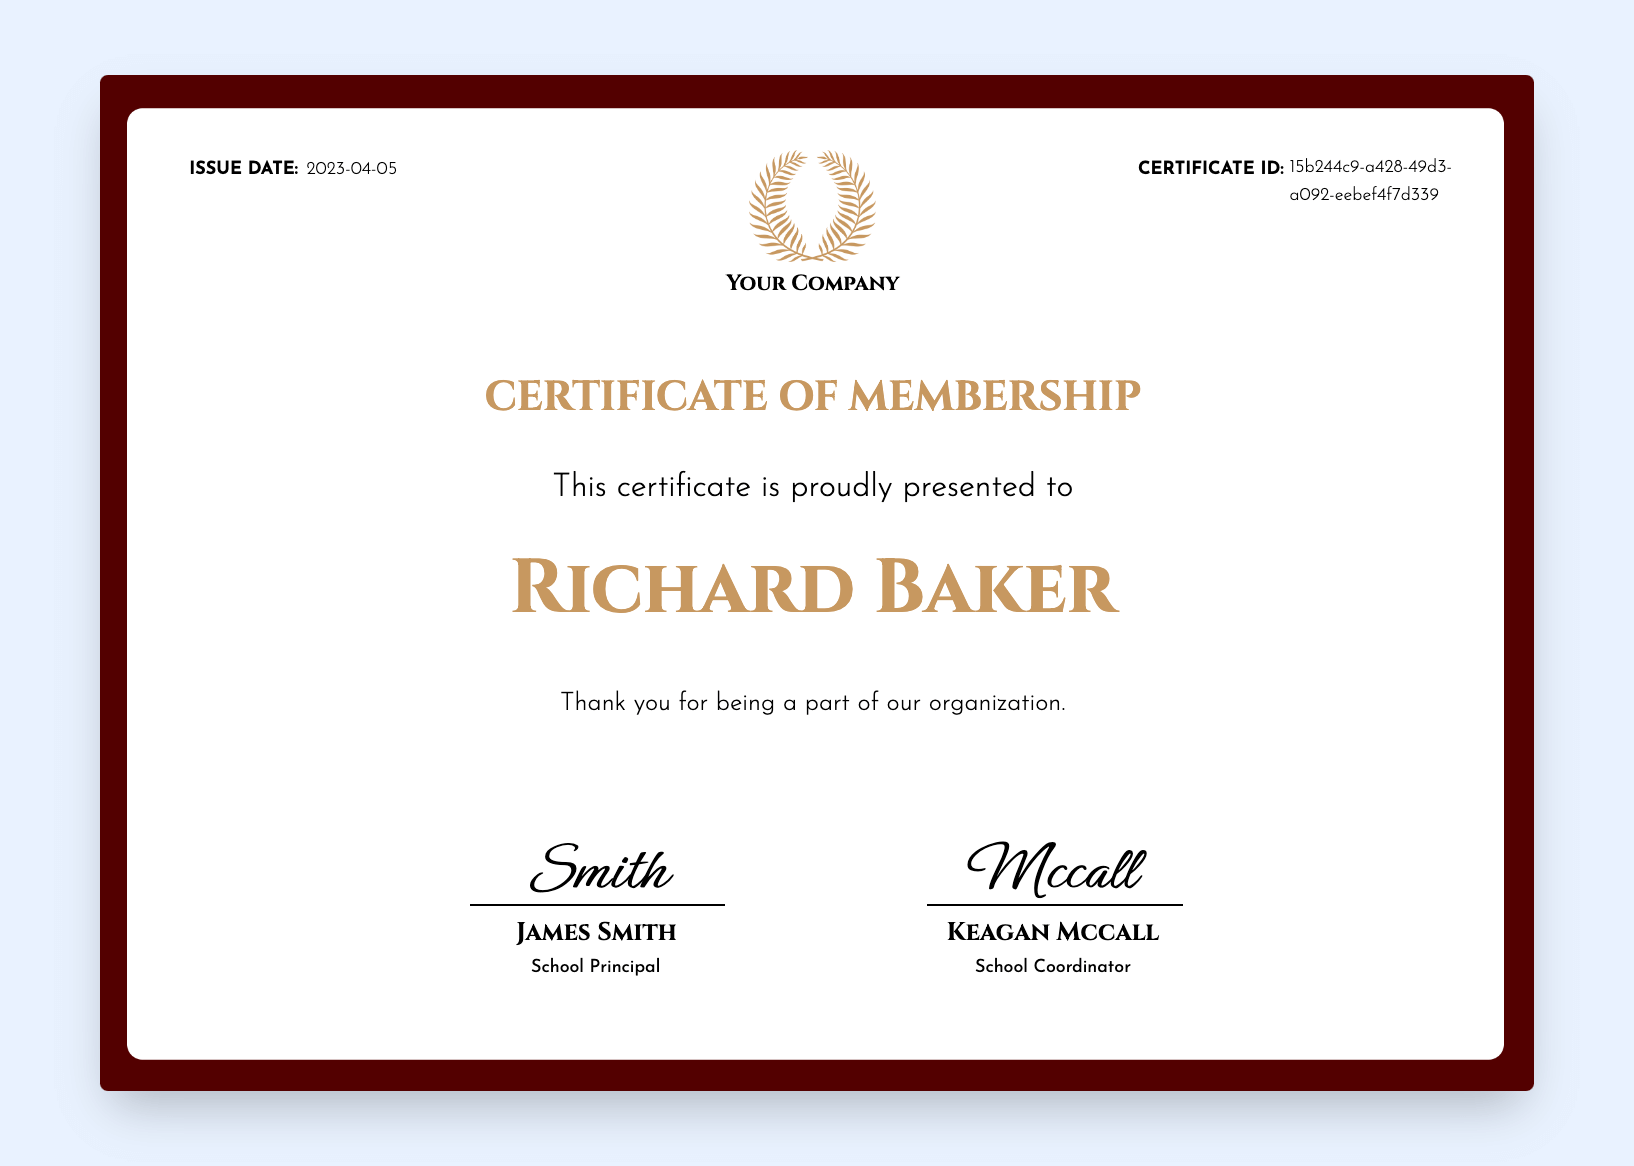 Minimalistic certificate of membership template.